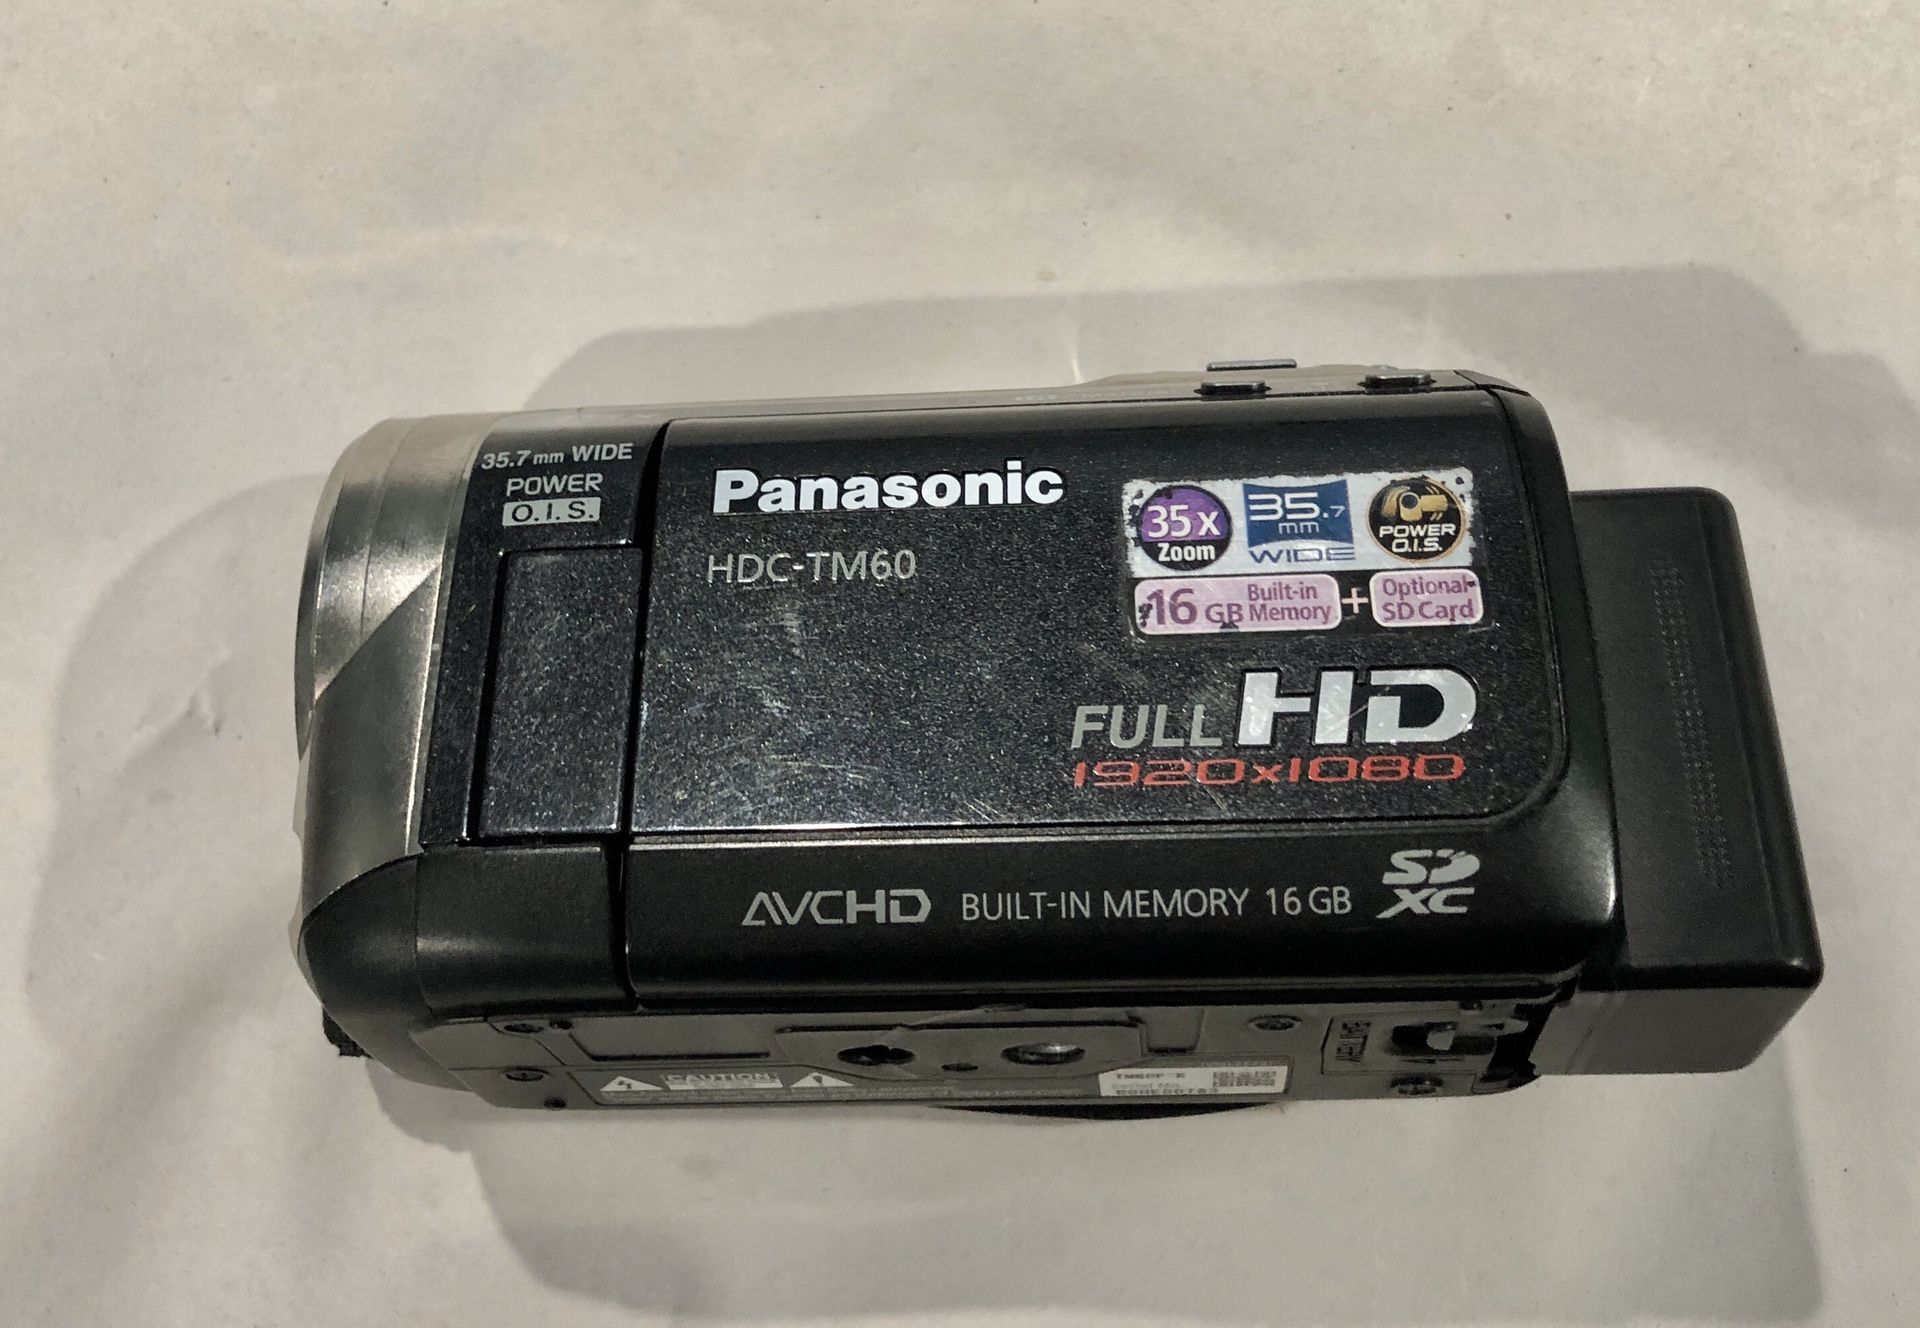 Full Hd camera Panasonic